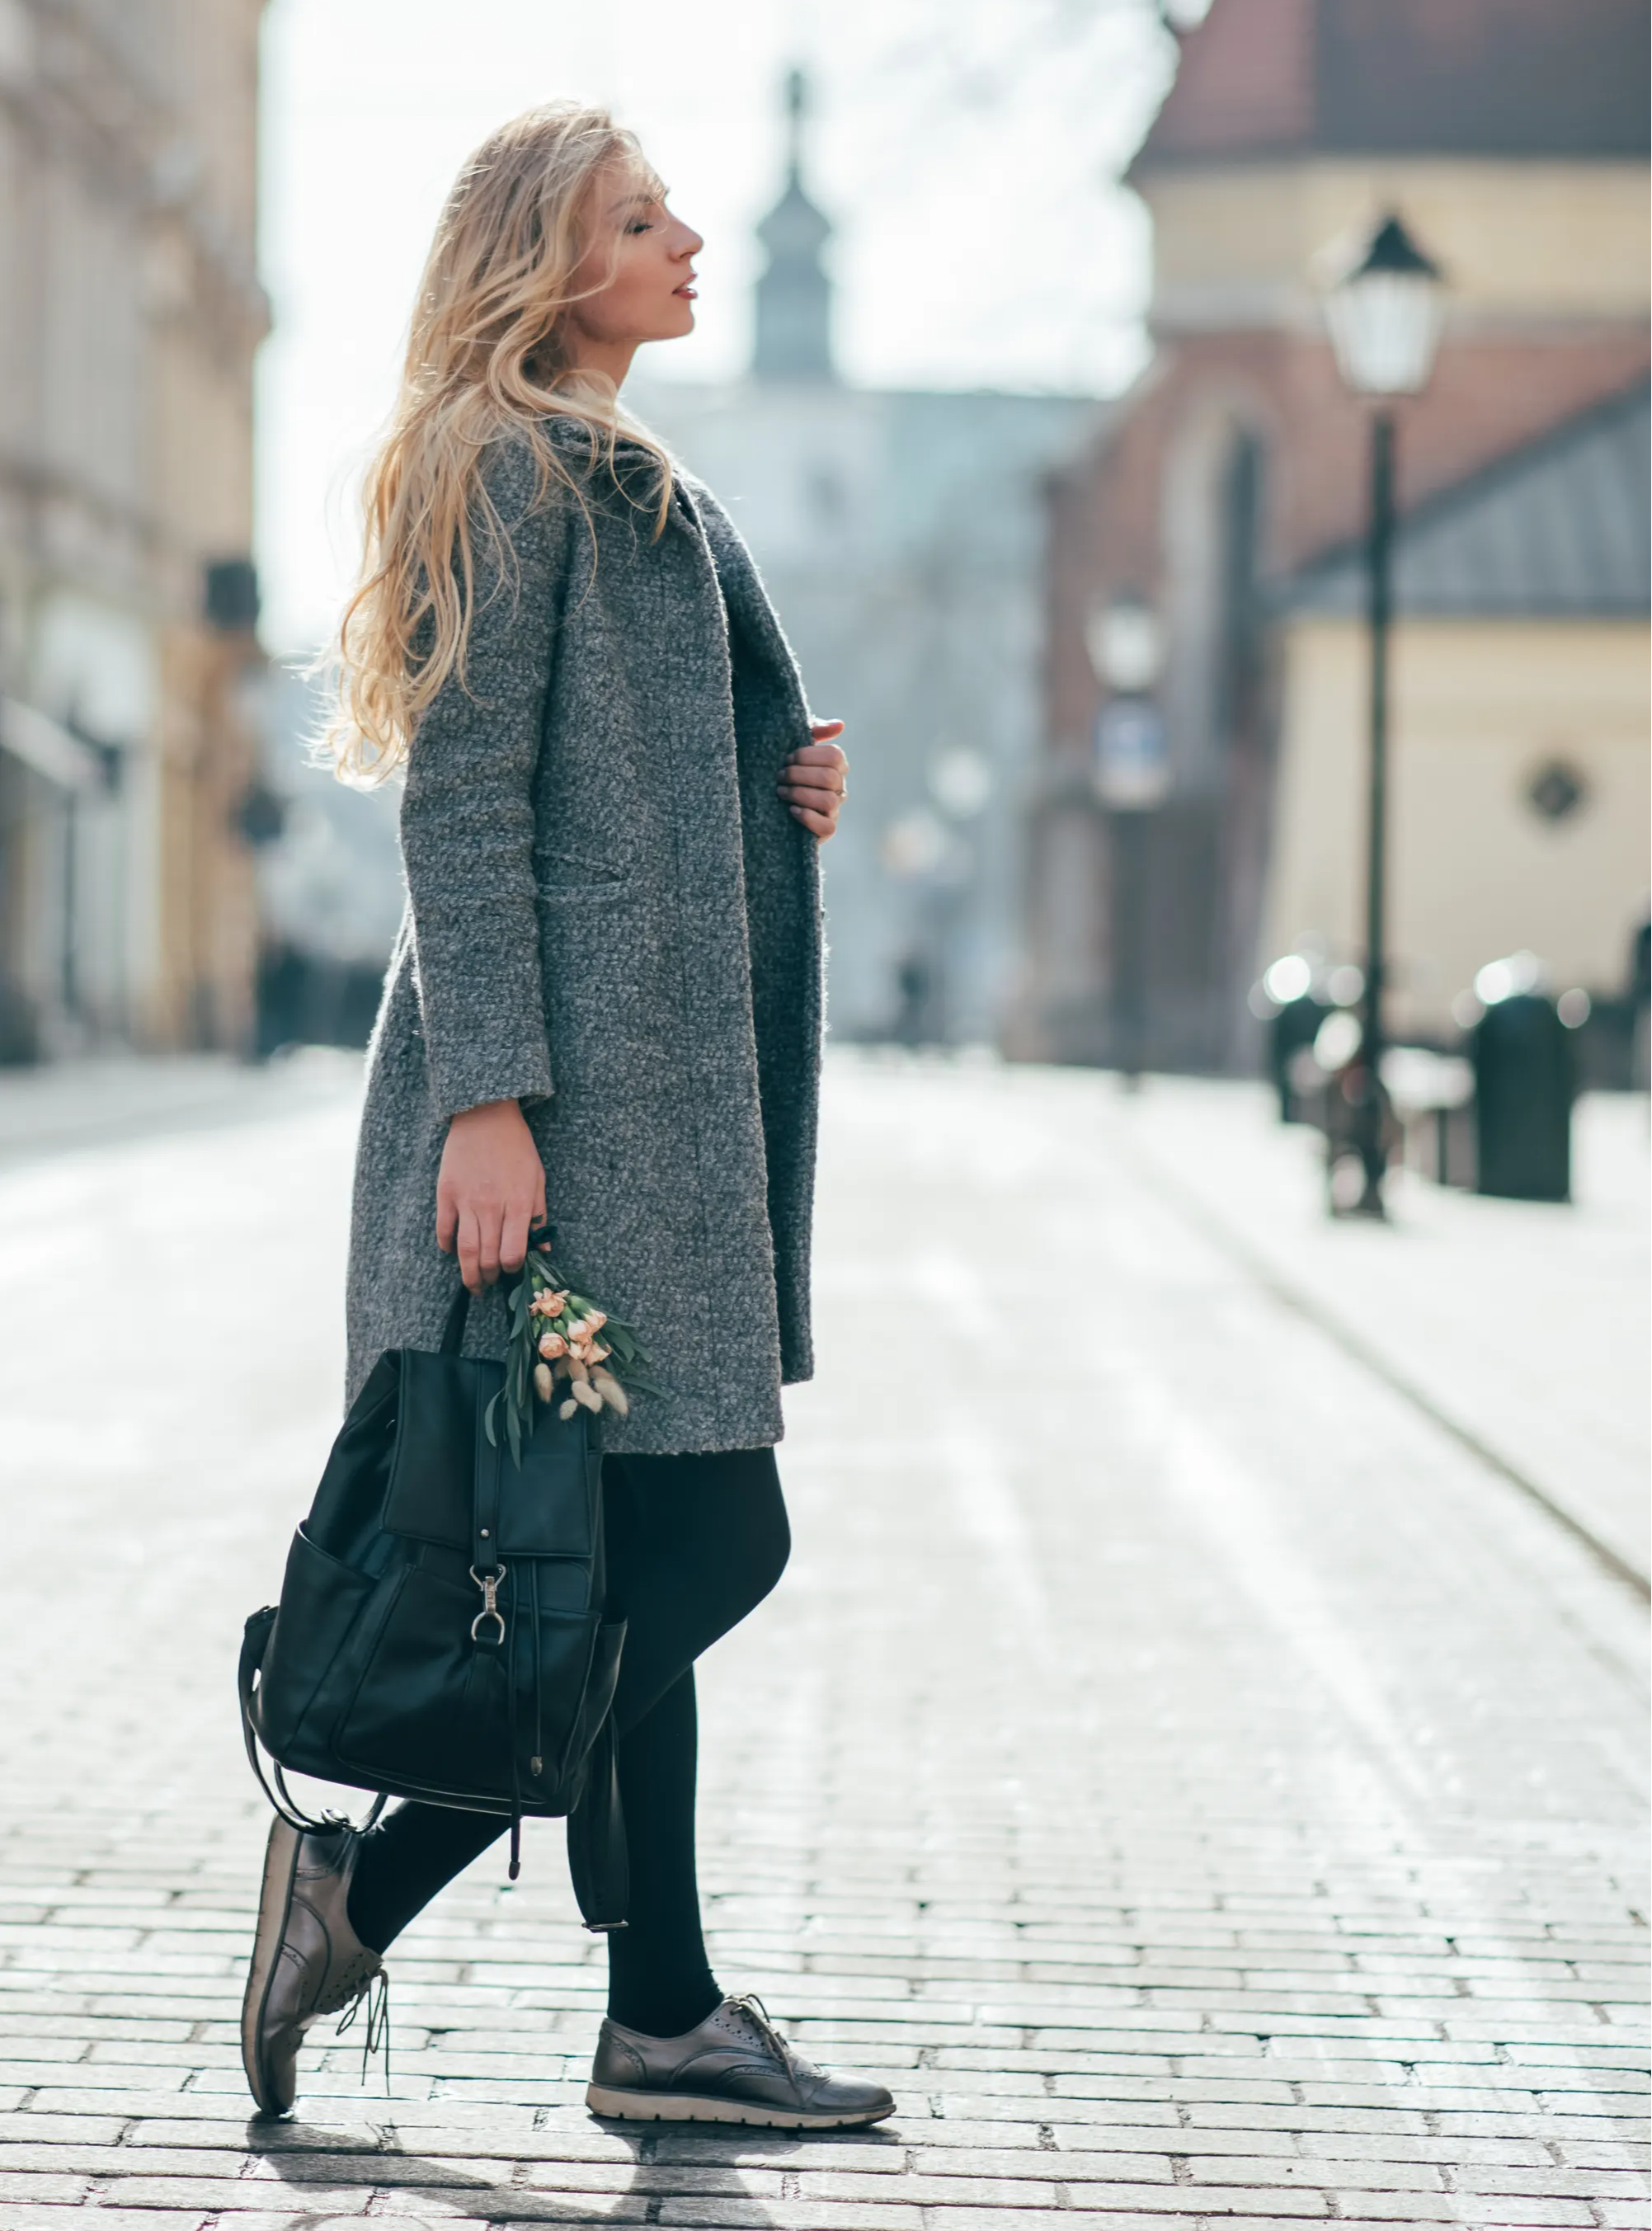 Stylish woman walking in street